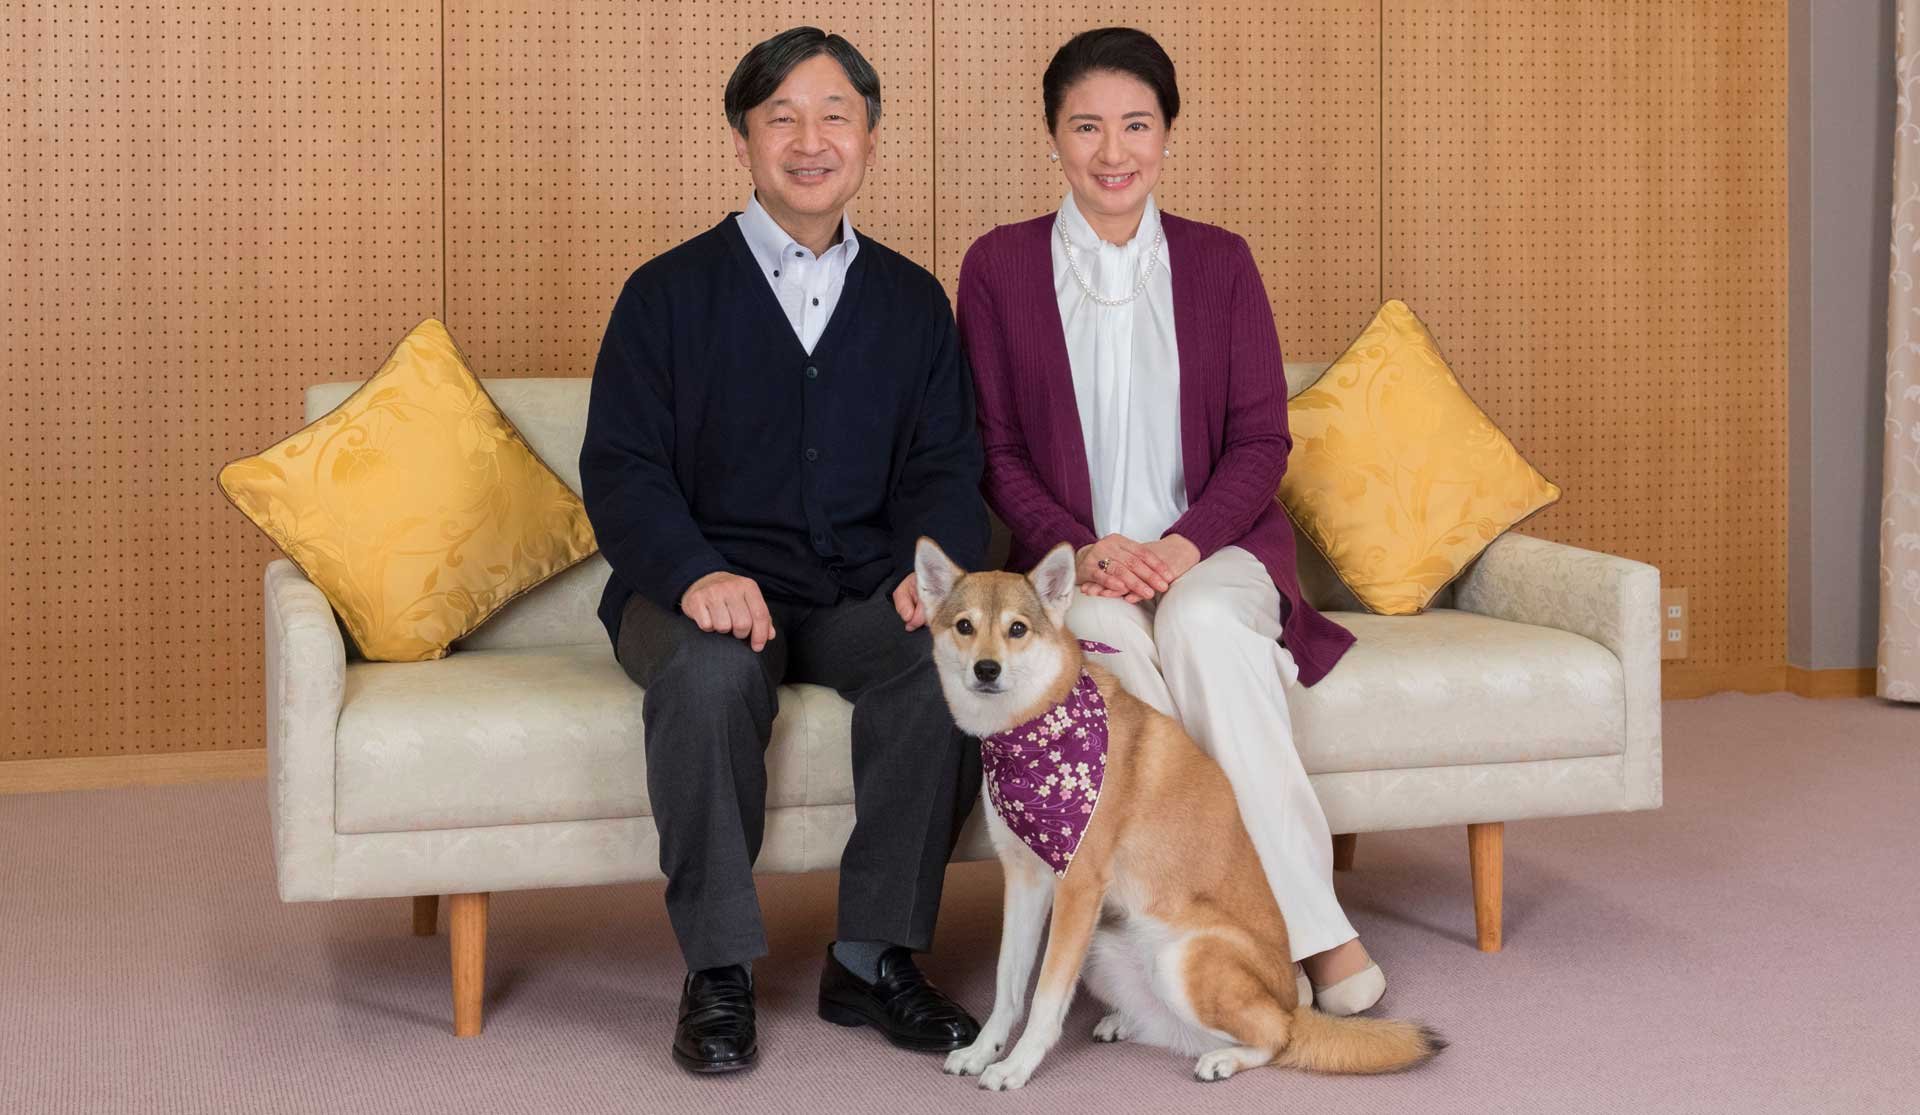 El príncipe Naruhito y la princesa Masako serán los nuevos emperador y emperatriz de Japón, a partir de este 1 de mayo.